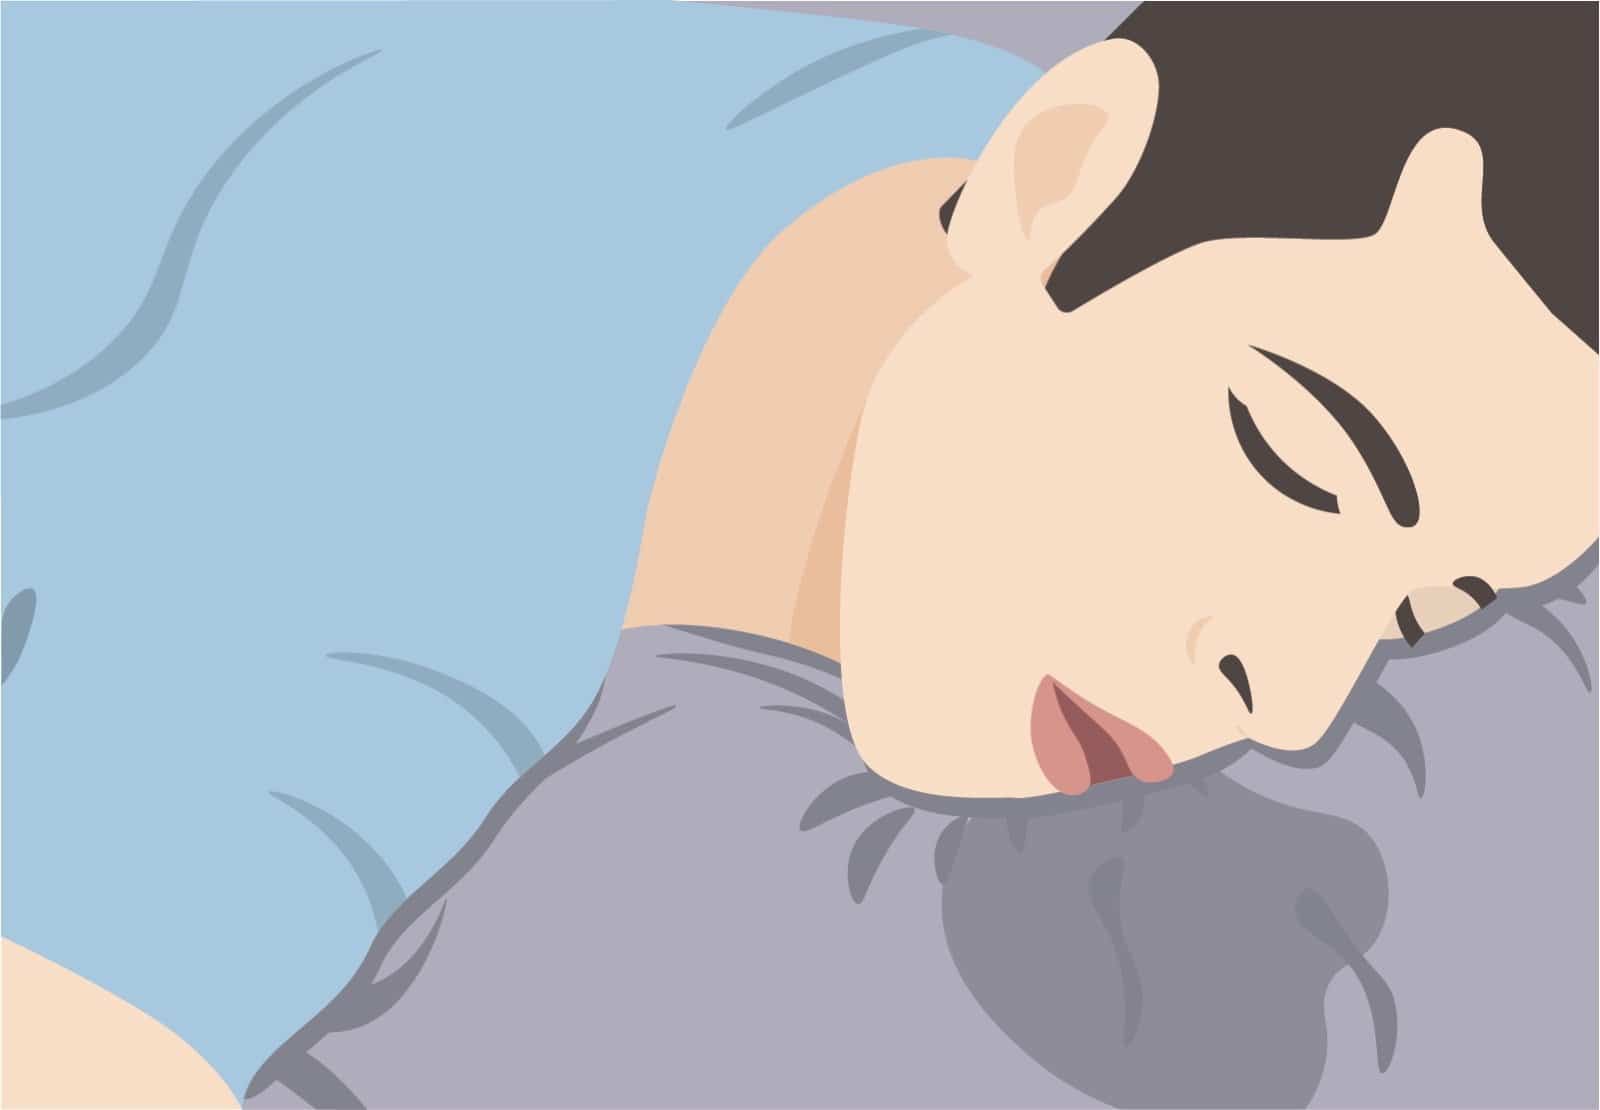 Sabbern im Schlaf: Es ist meist unbedenklich und keine Krankheit.